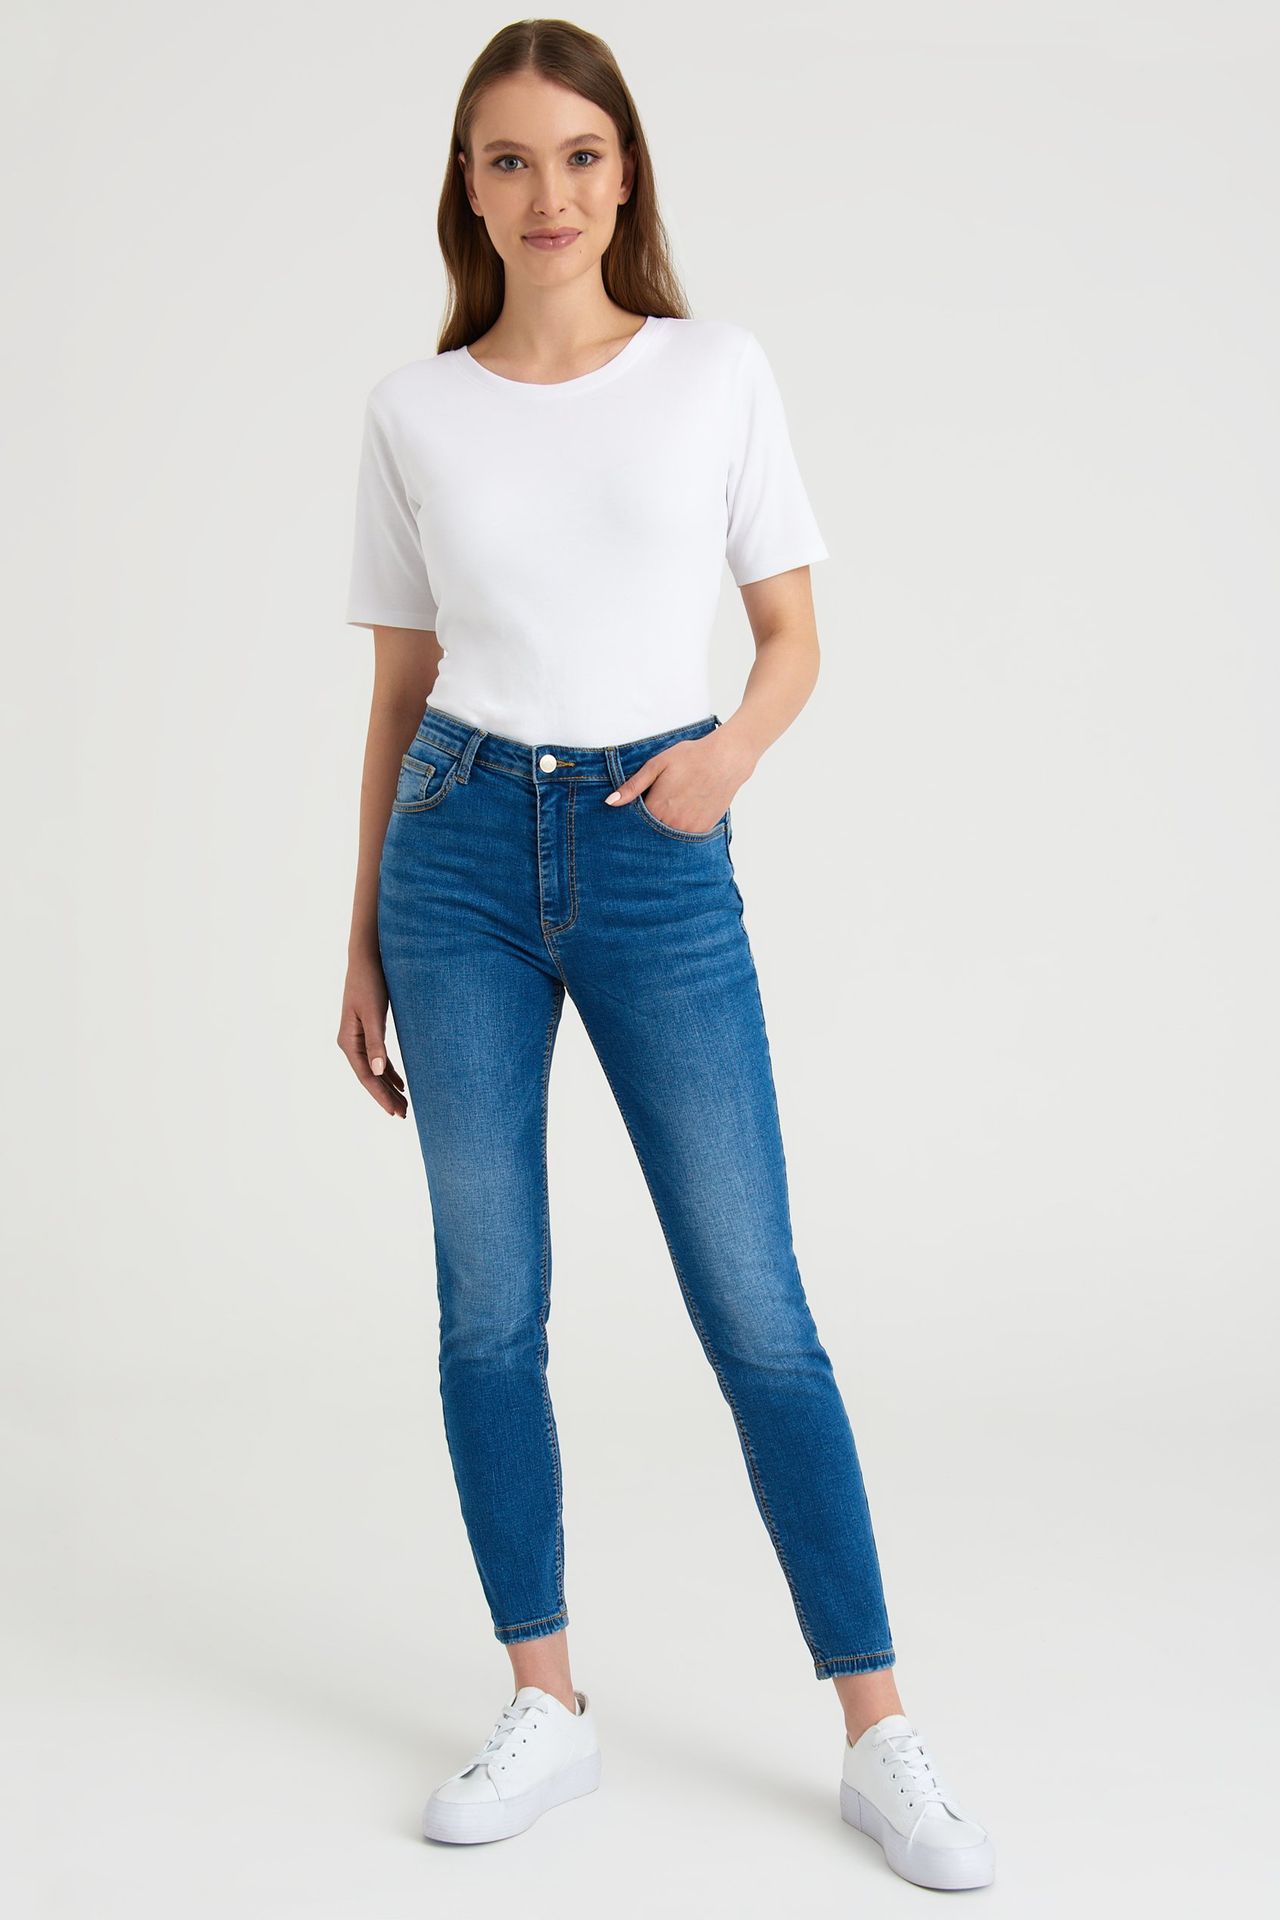 Klasyczne jeansy typu skinny push up, niebieskie - Greenpoint